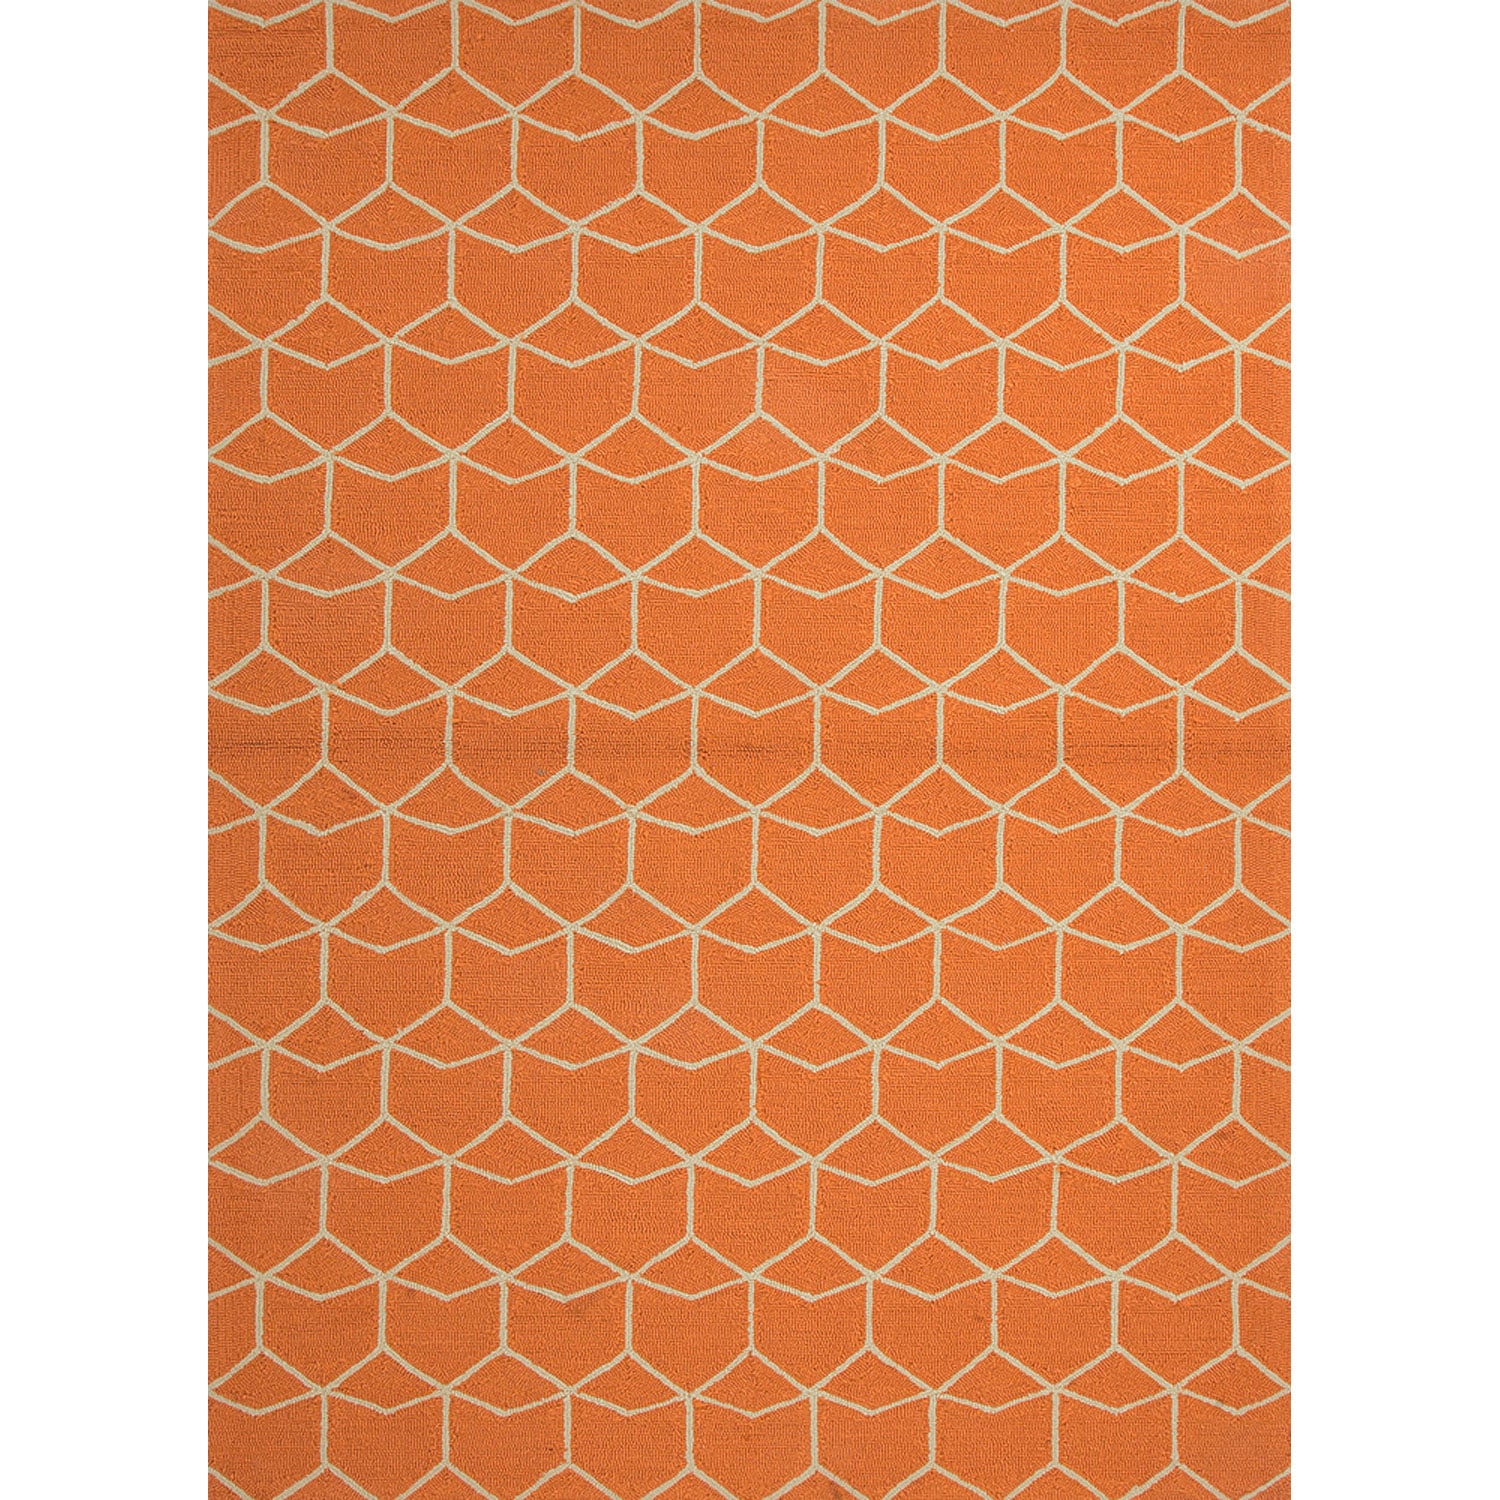 Hand hooked Indoor/outdoor Abstract Red/orange Area Rug (36 X 56)